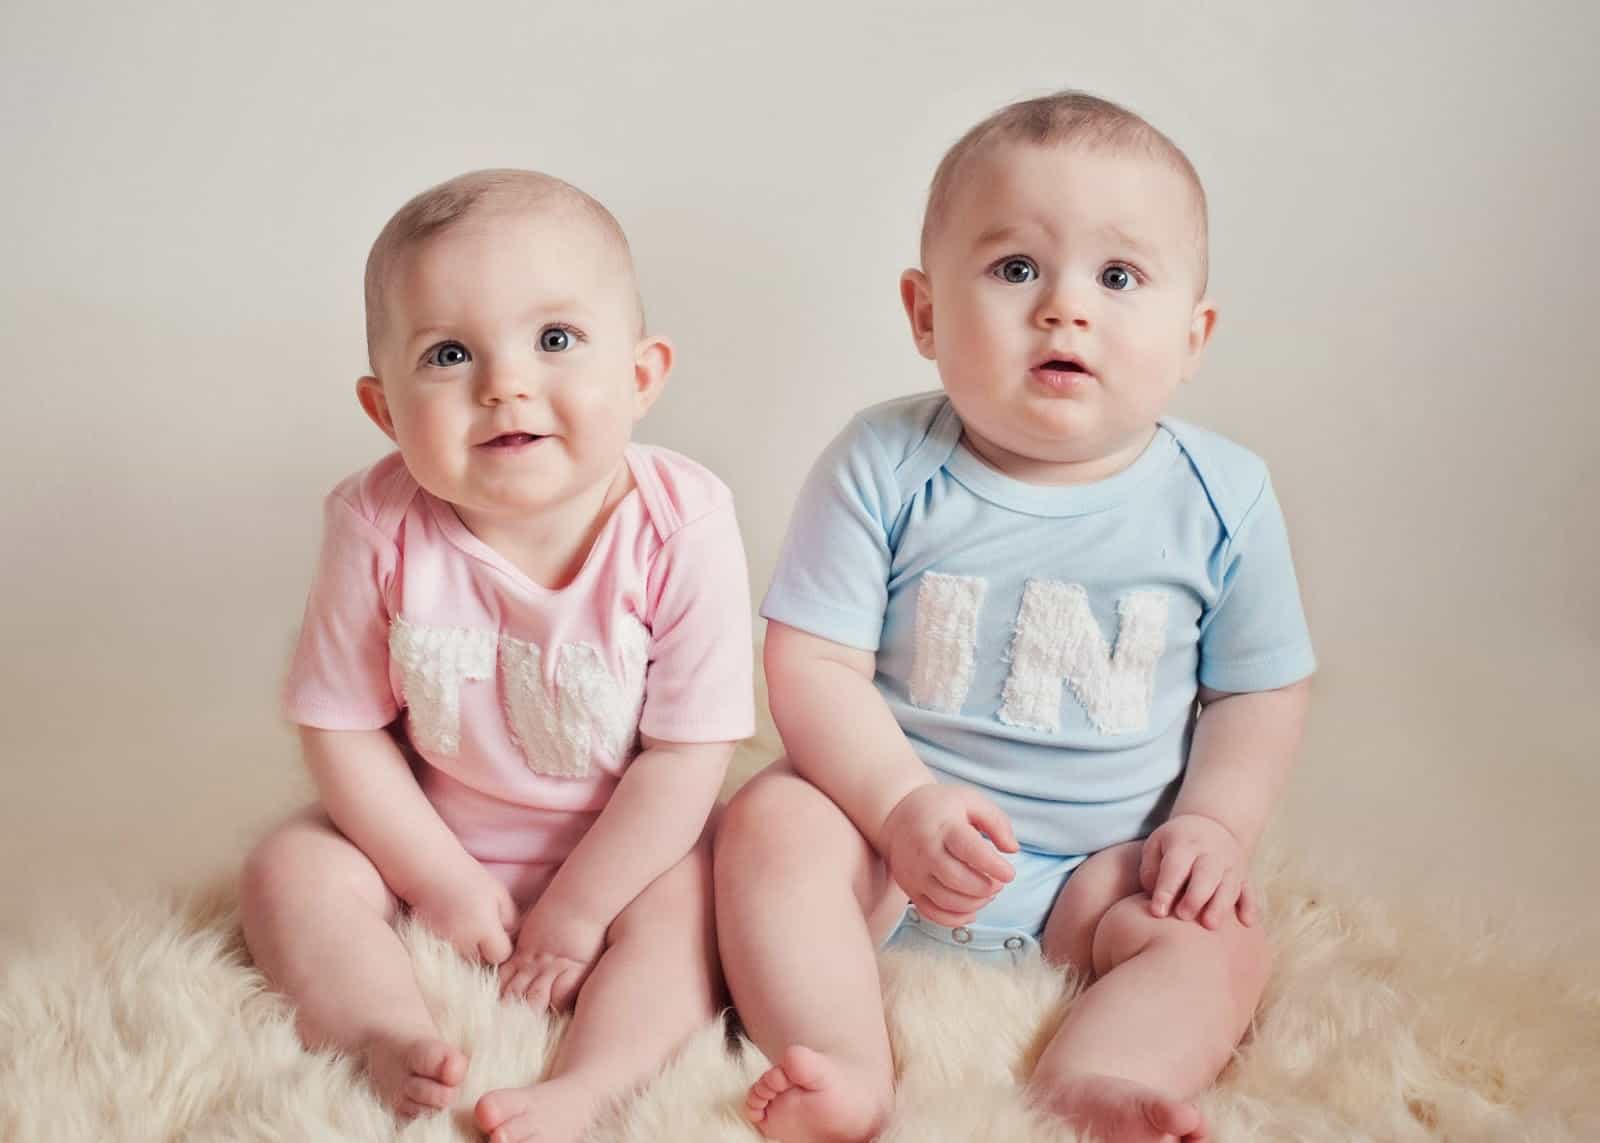 מדוע תוכניות IVF מייצרות לעתים קרובות תאומים?